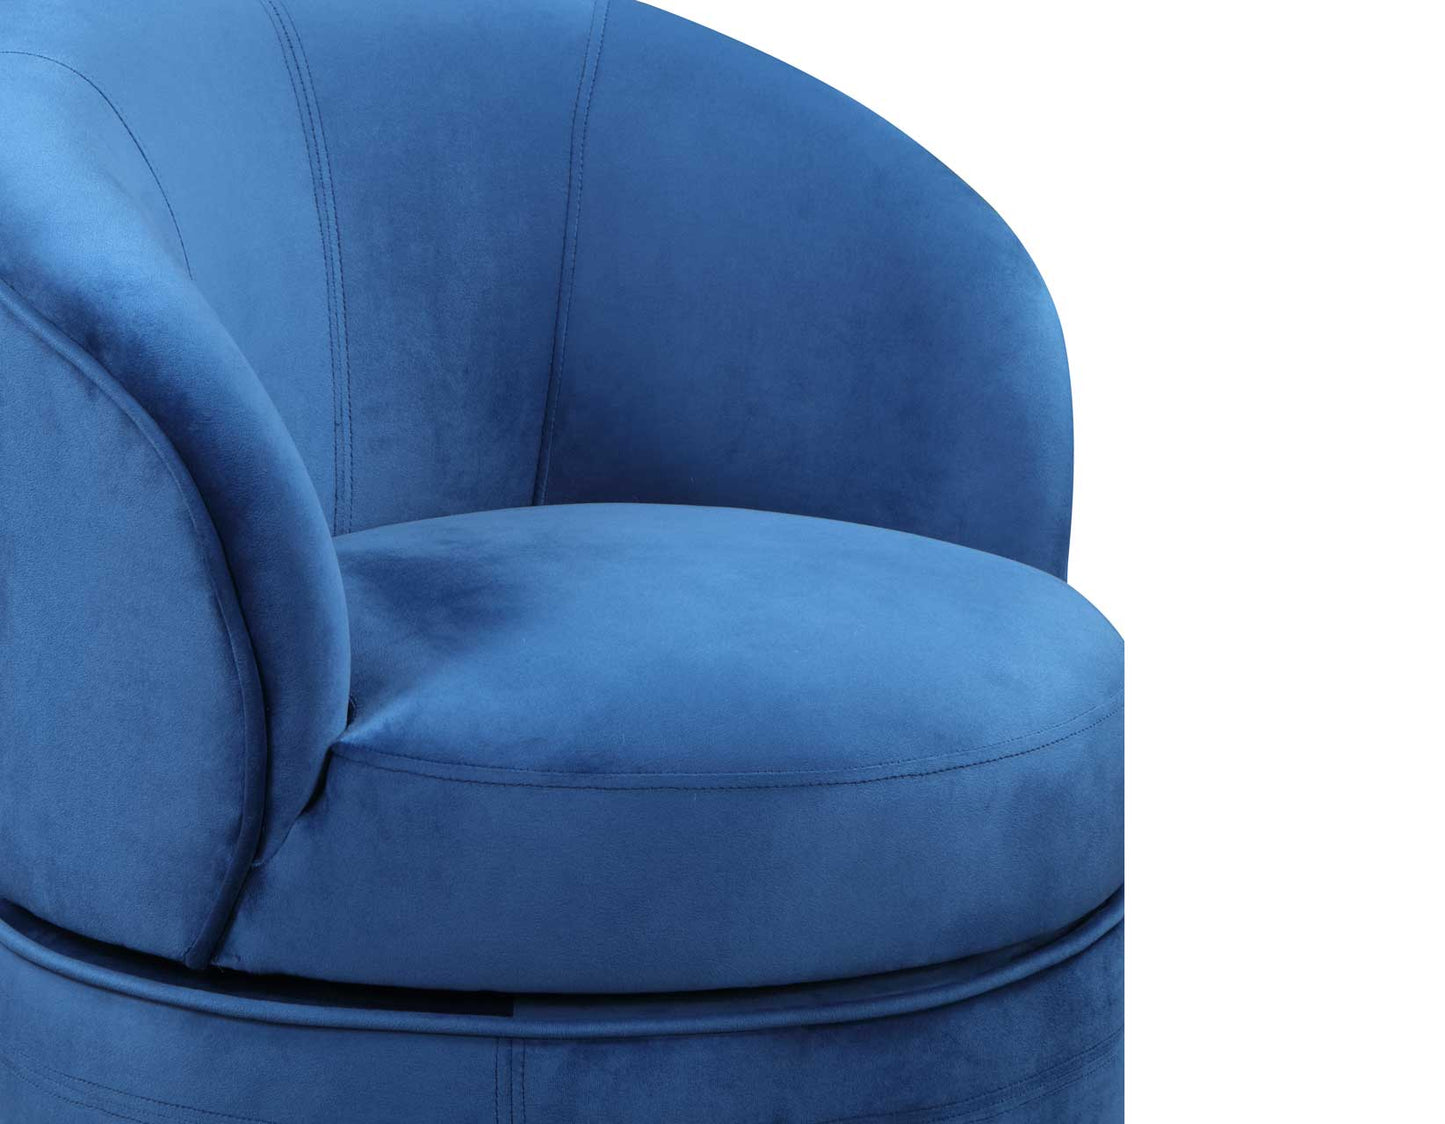 Sophia Swivel Accent Chair, Blue Velvet